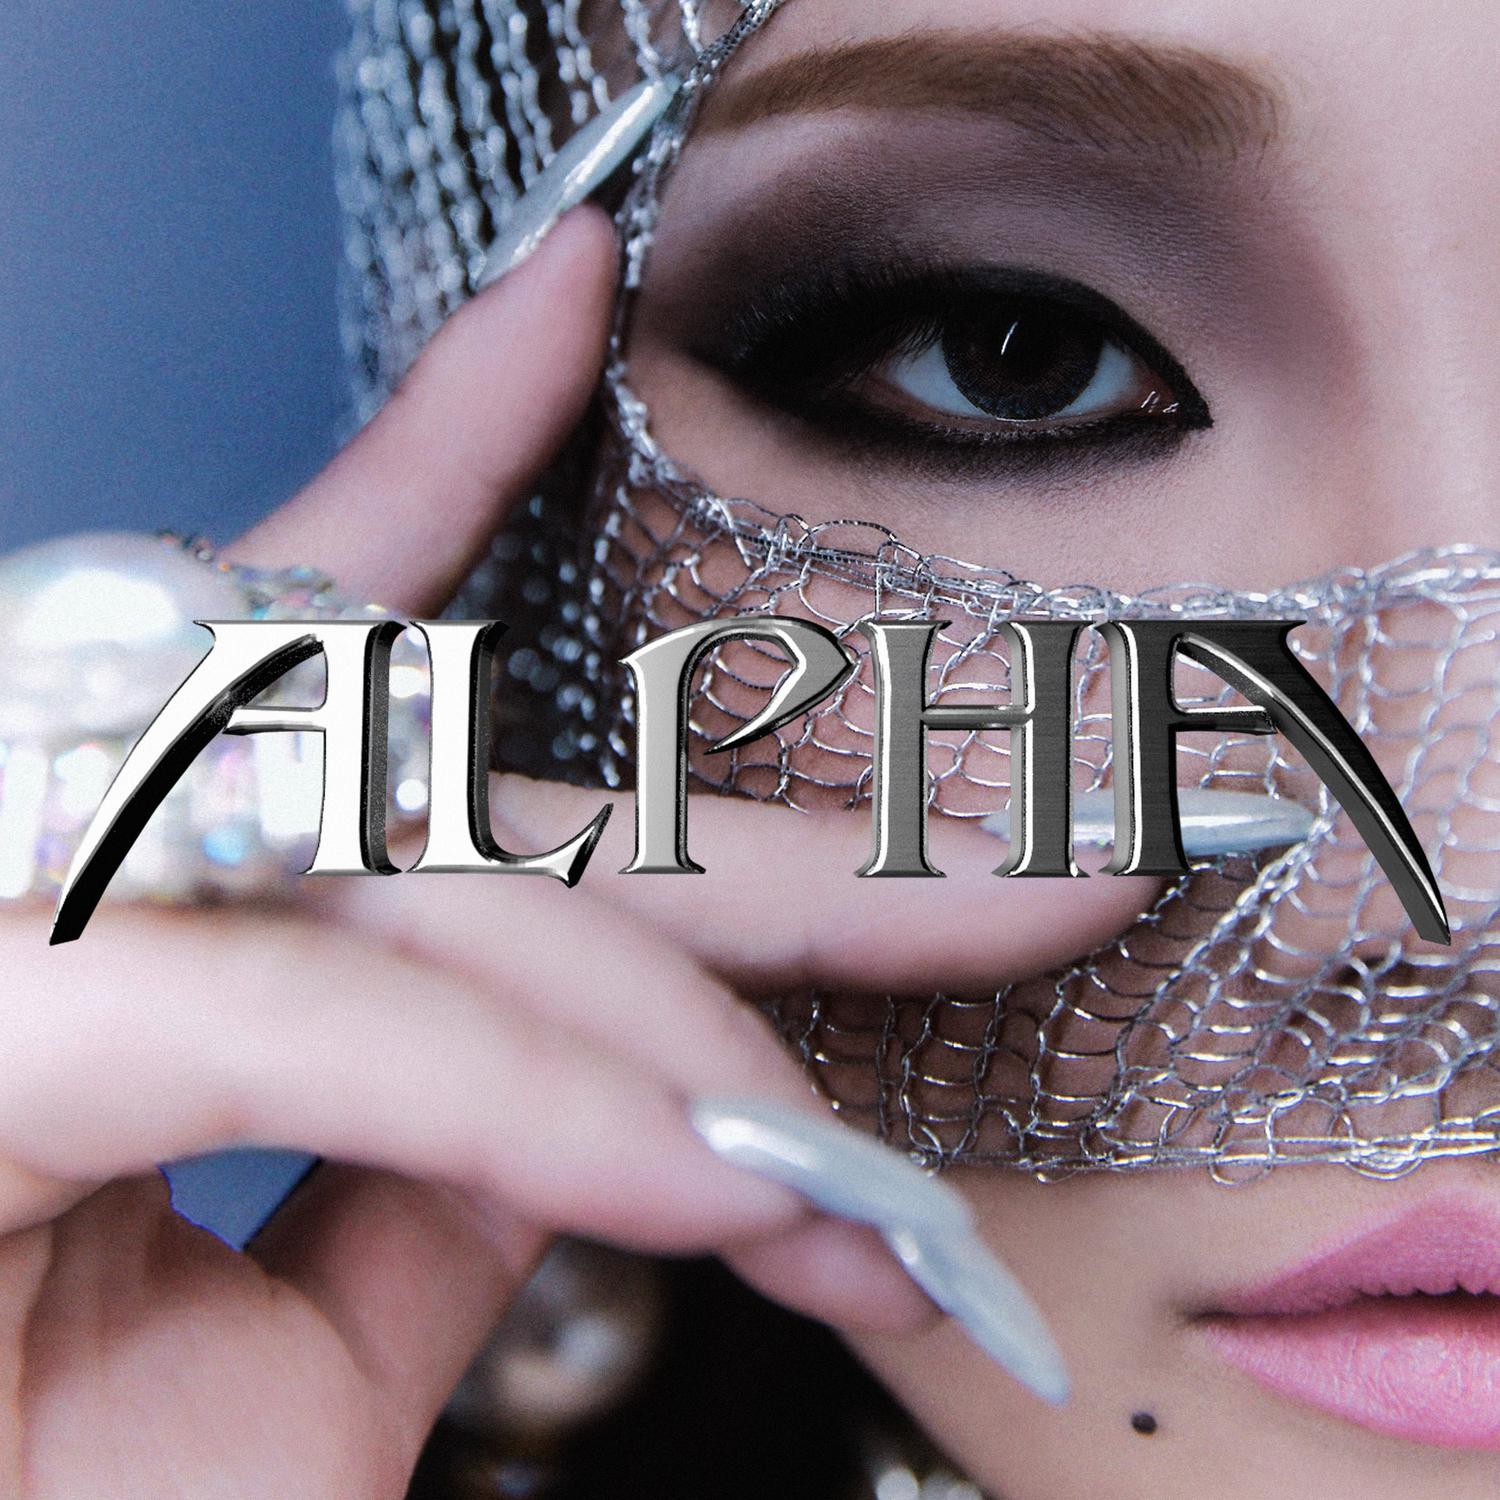 Tie a Cherry歌词 歌手CL-专辑ALPHA-单曲《Tie a Cherry》LRC歌词下载